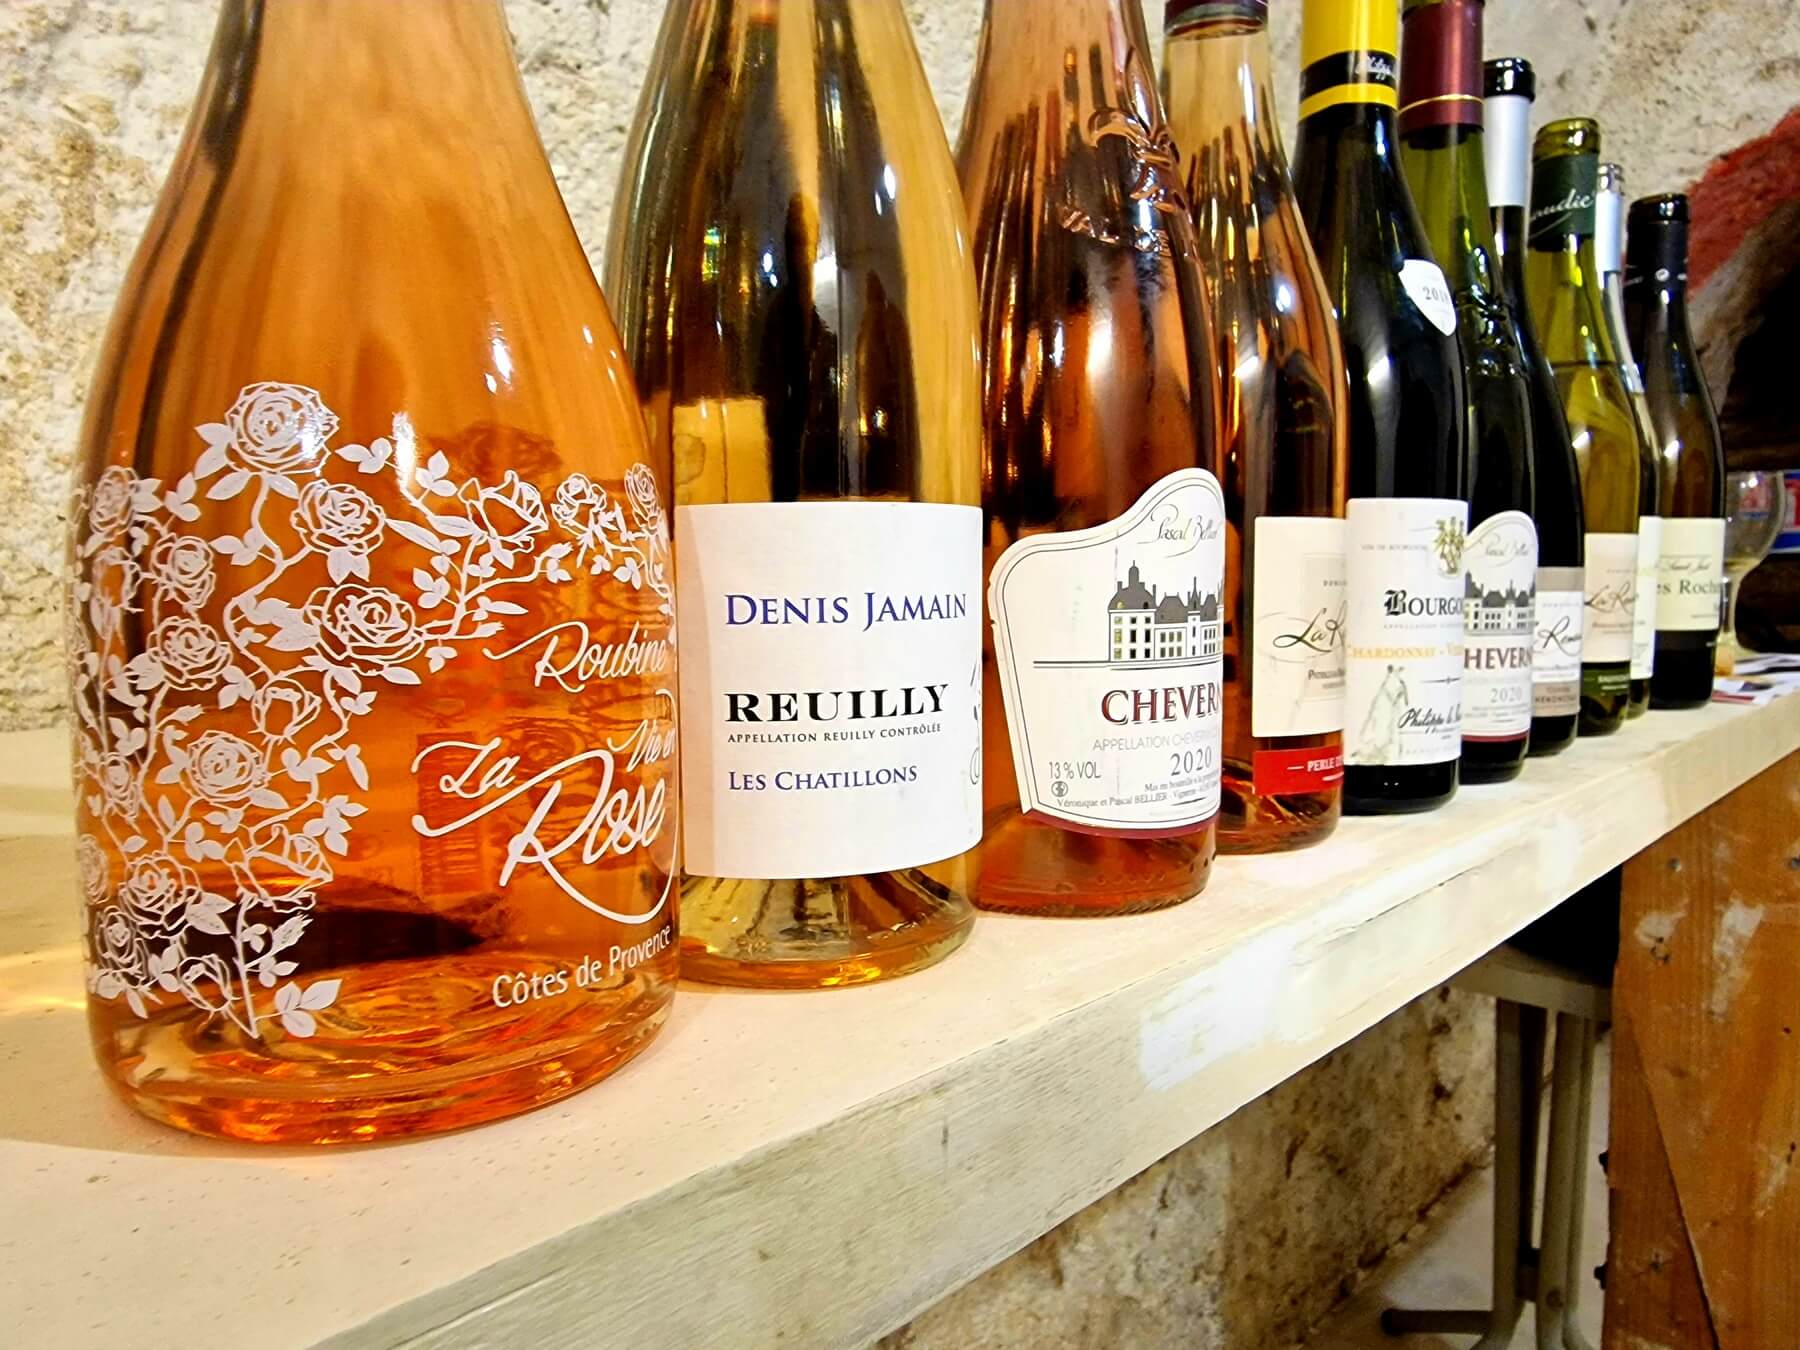 Dégustez notre séléction de vins, découvrir nos produits régionaux - Le 1519 Restaurant & Bar proche Chambord